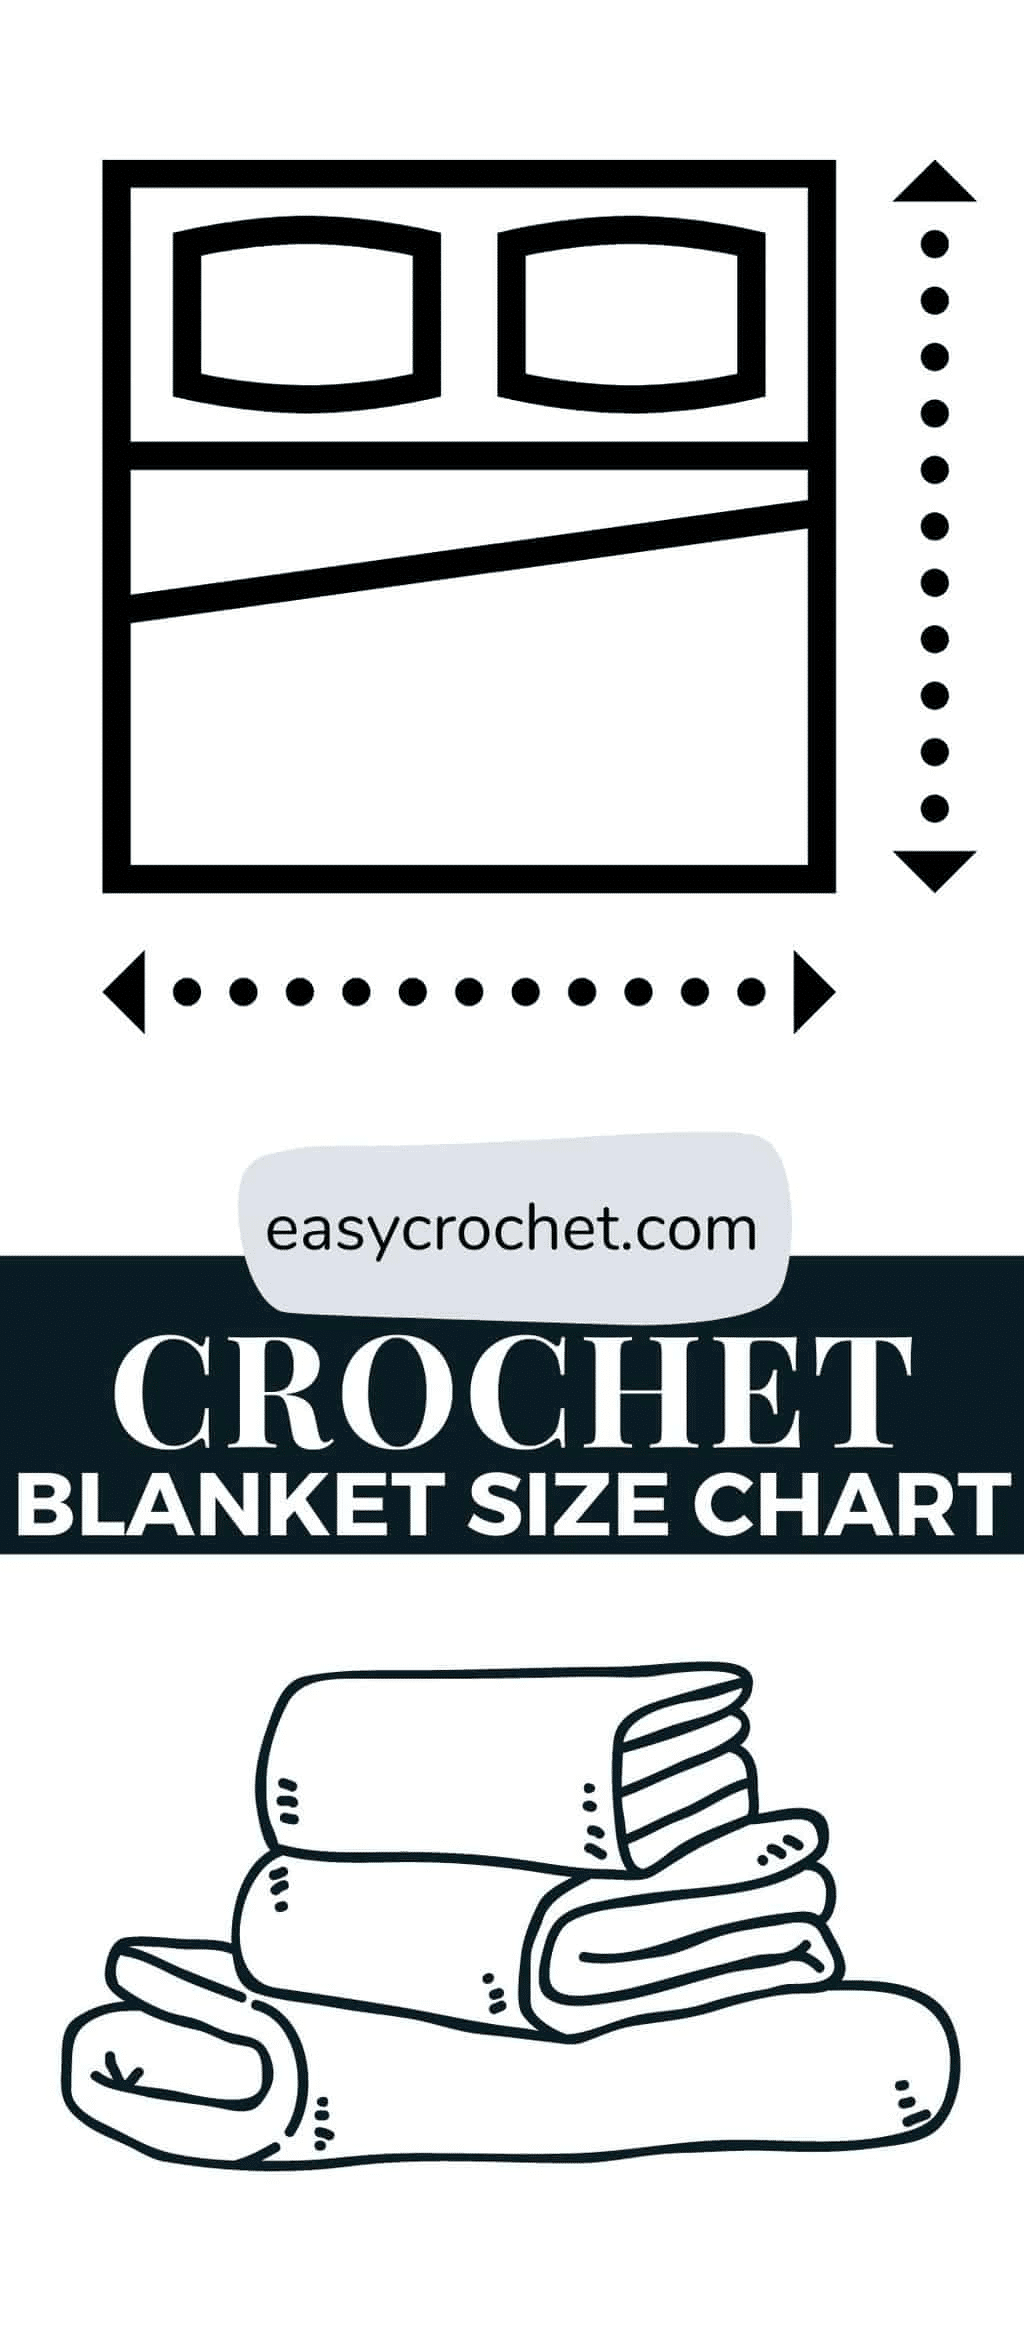 Crochet blanket size chart free